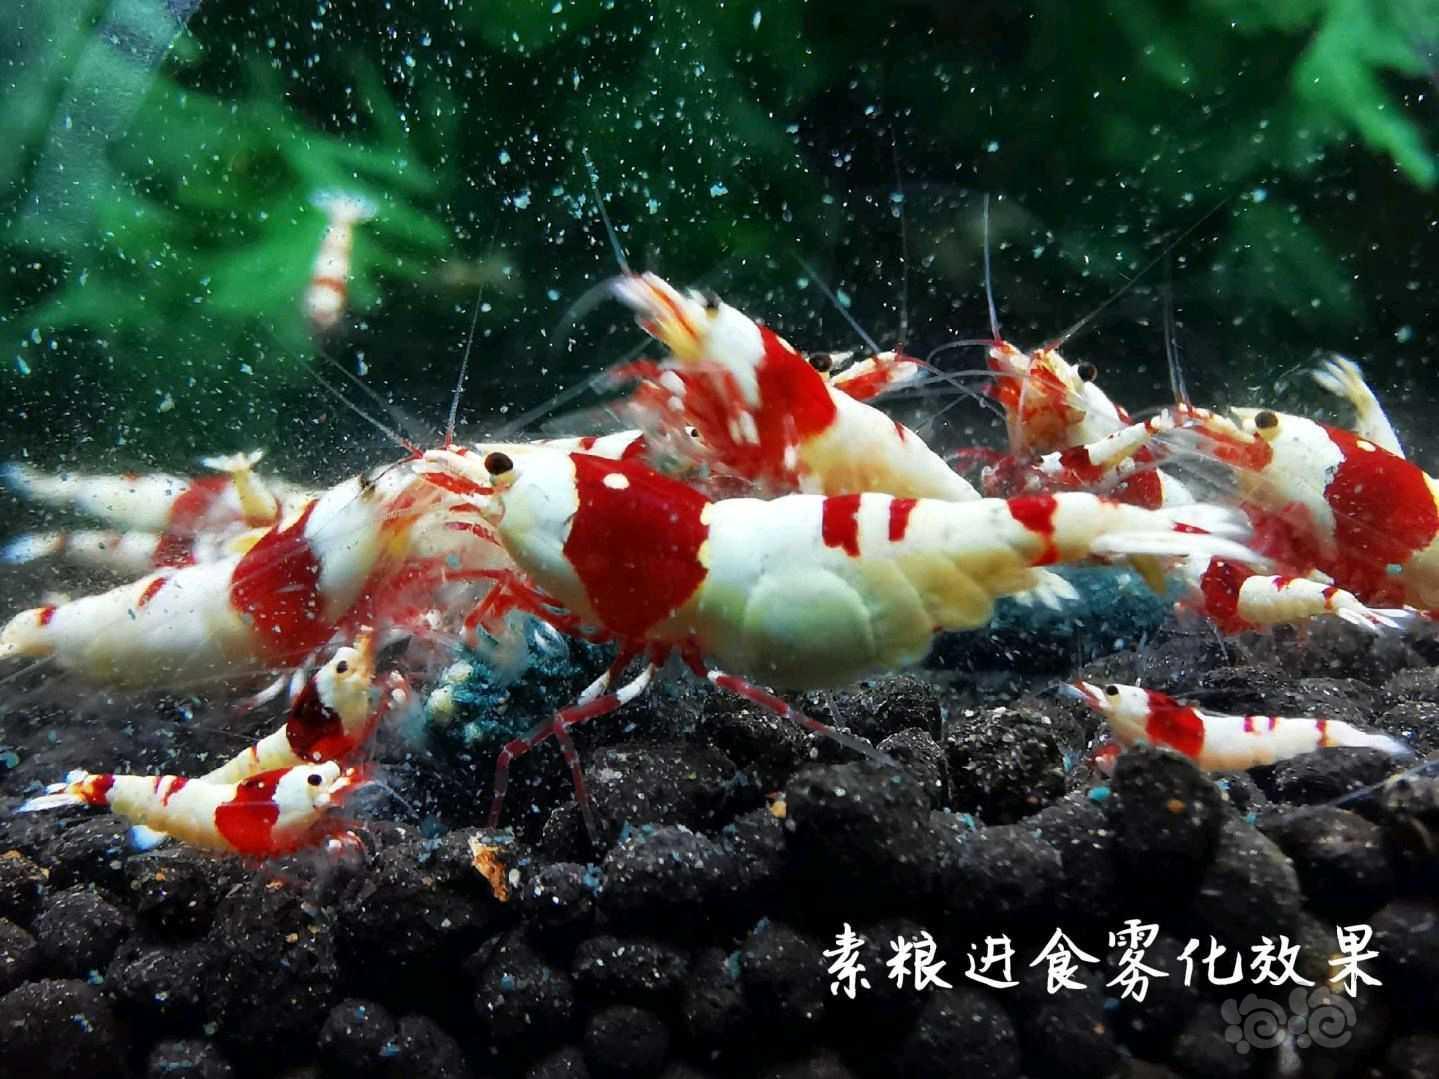 【用品】2021-06-28#RMB拍卖瑾福水晶虾饲料一套-图6